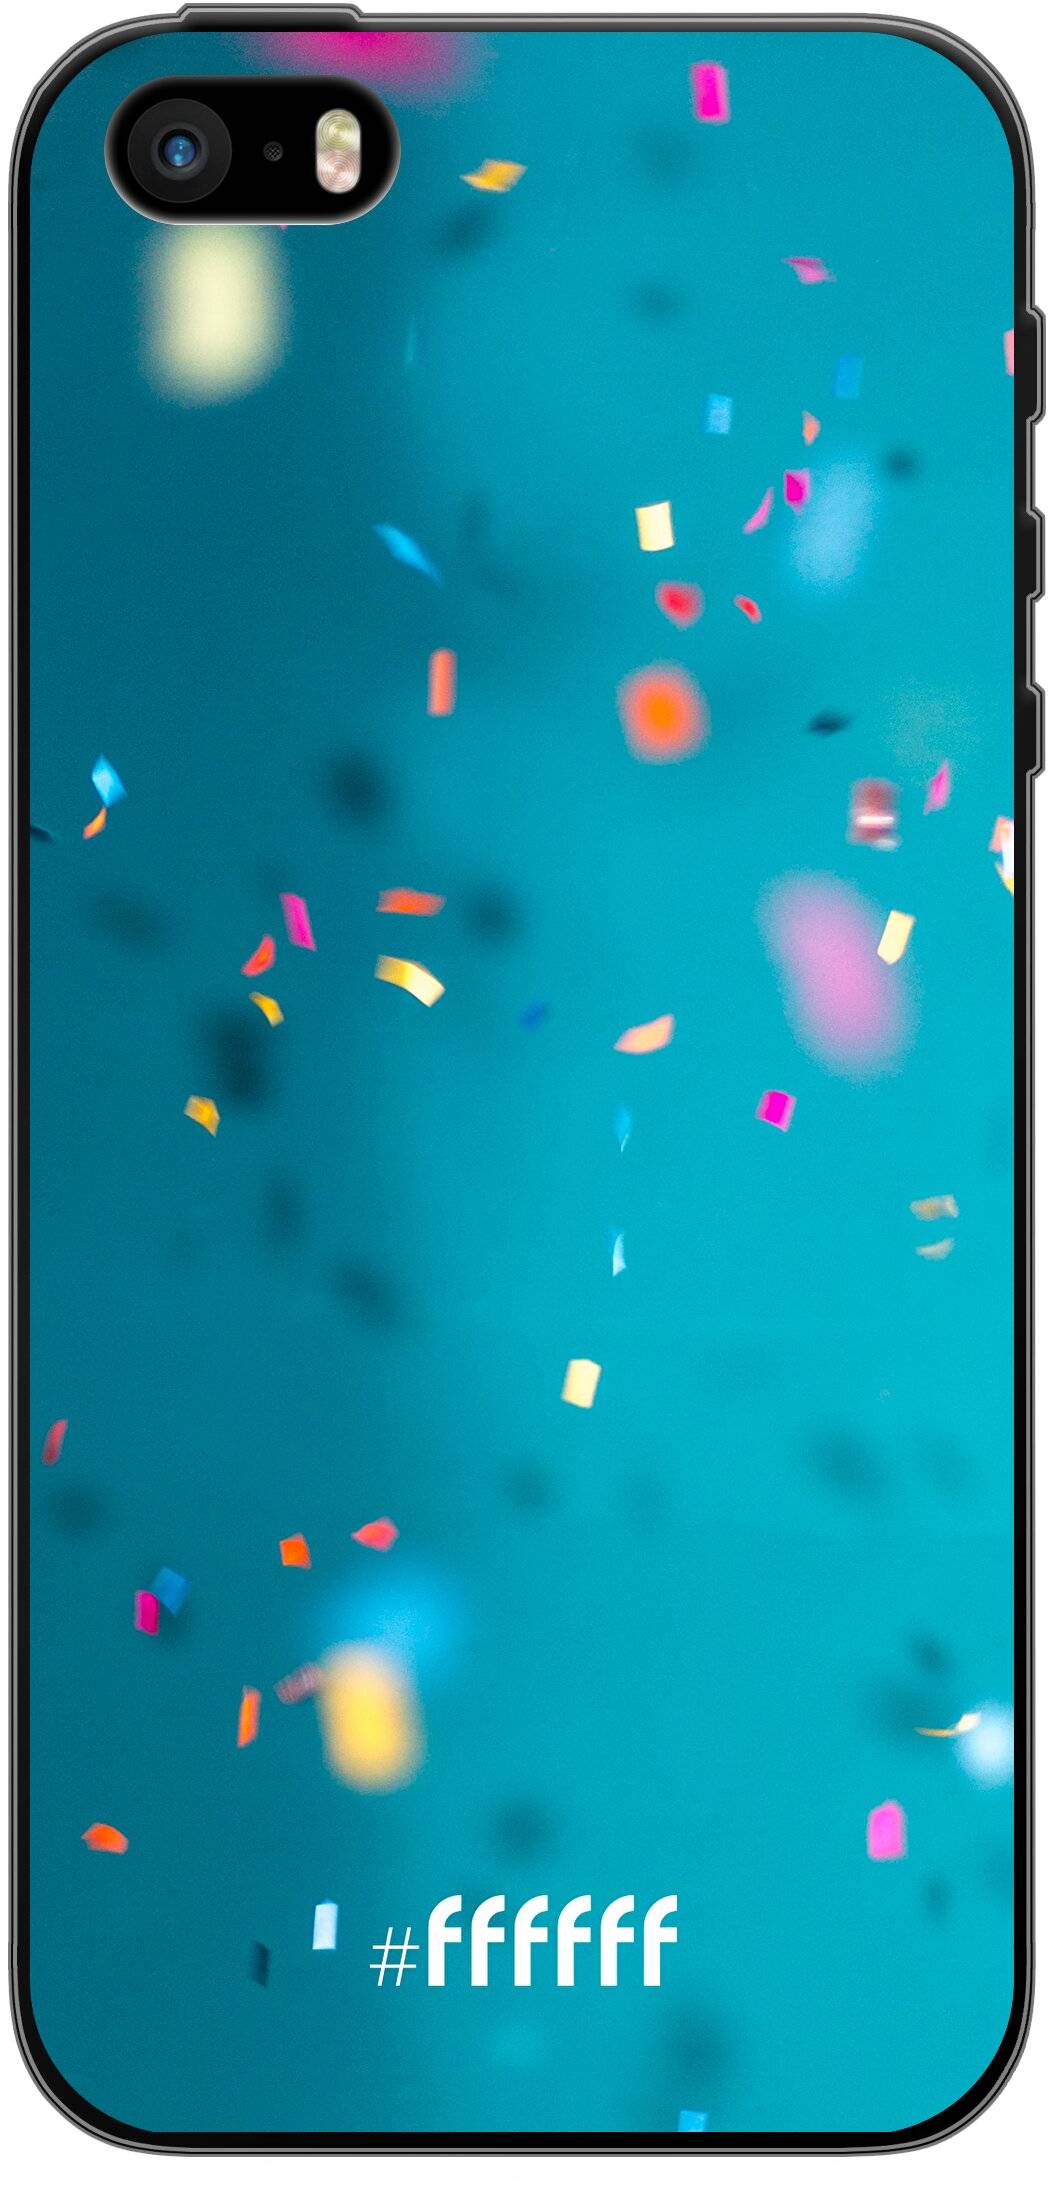 Confetti iPhone 5